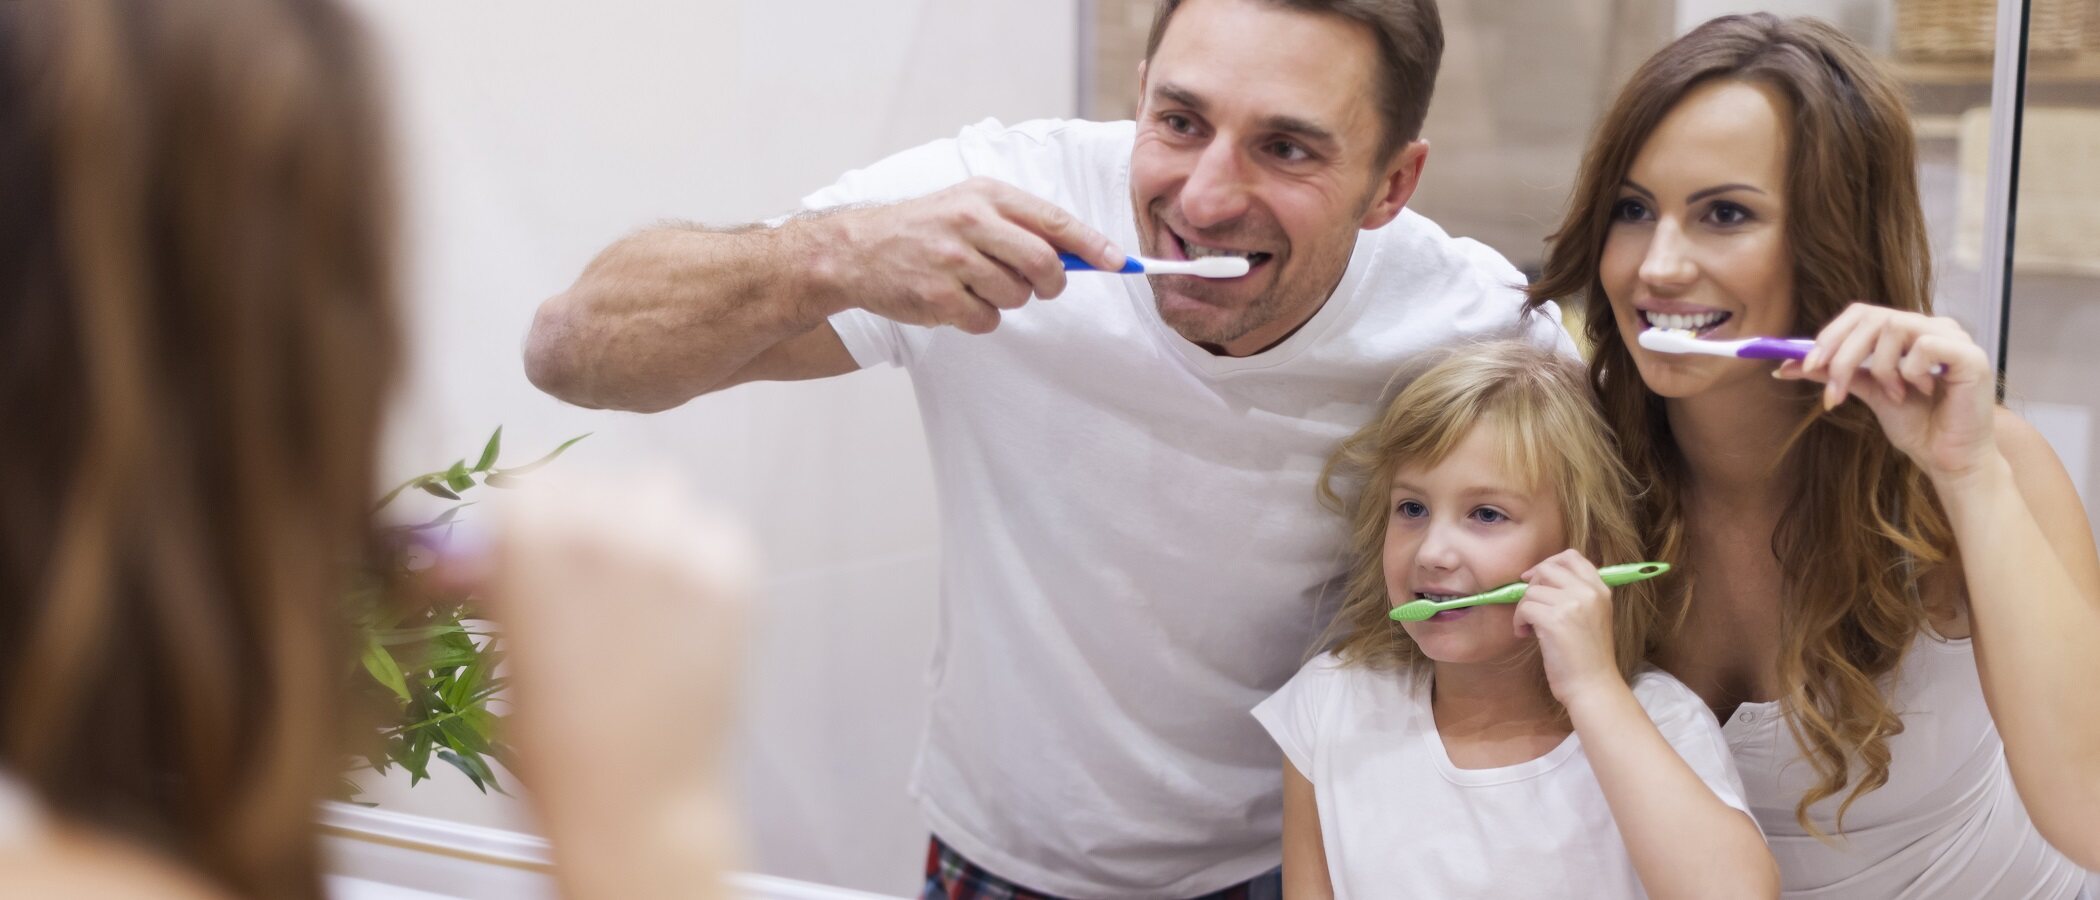 Cinco consejos básicos para cuidar la salud bucal de los niños